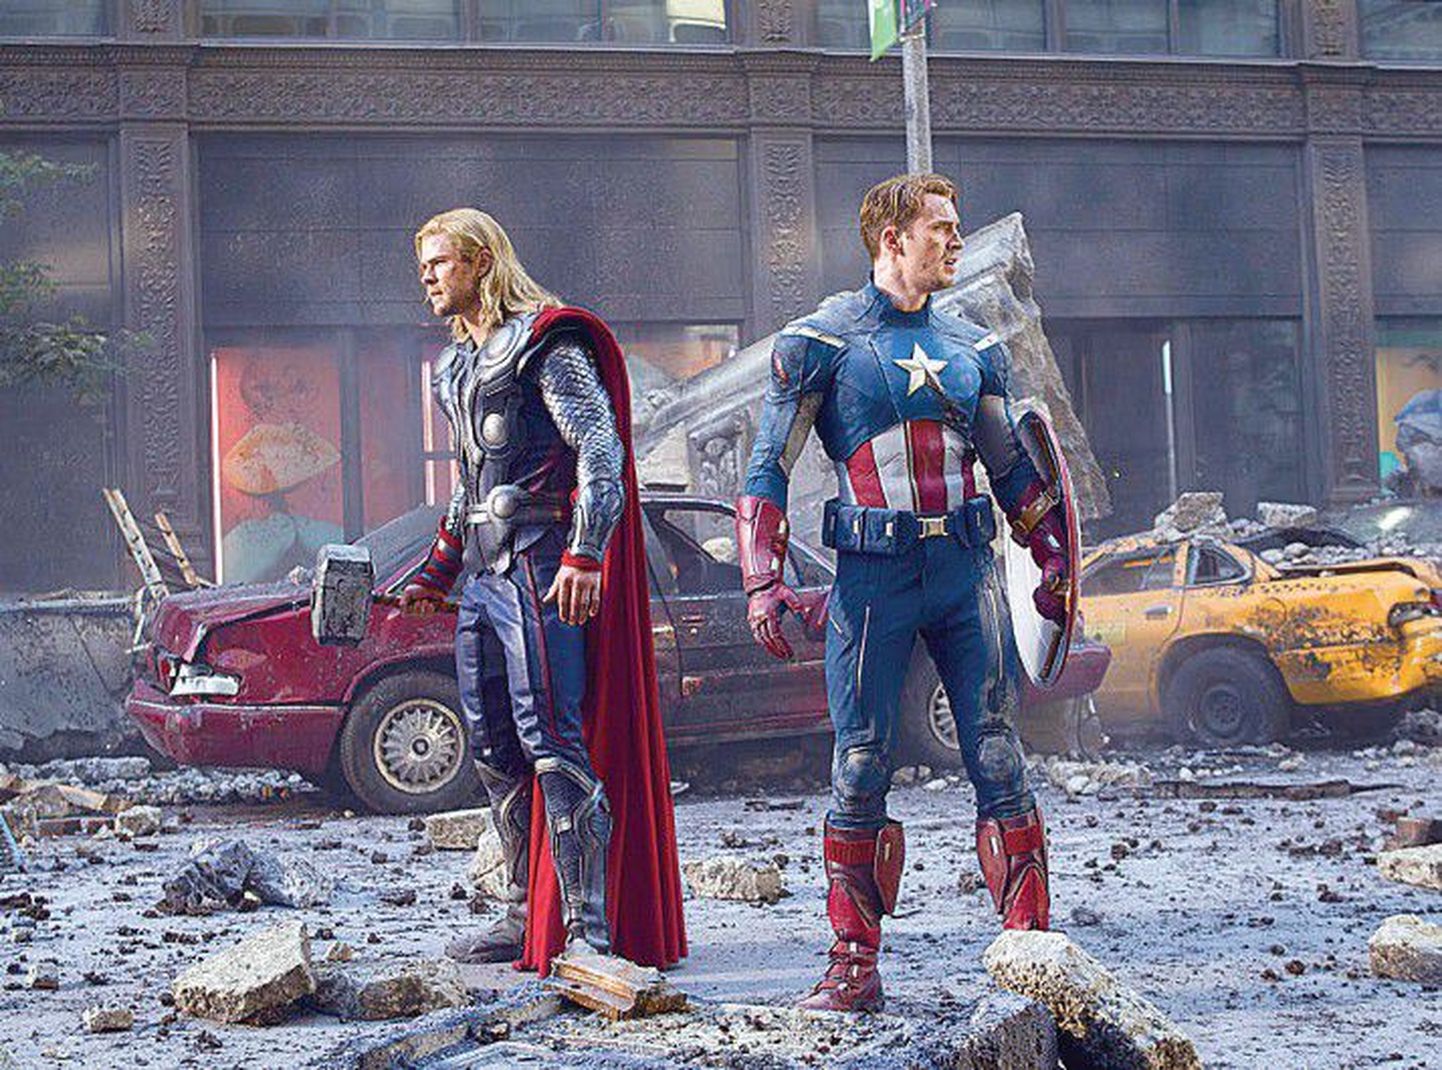 Куда подевались все чудища? Тор (Крис Хемсворт) и Капитан Америка (Крис Эванс) провели в Нью-Йорке основательную чистку.